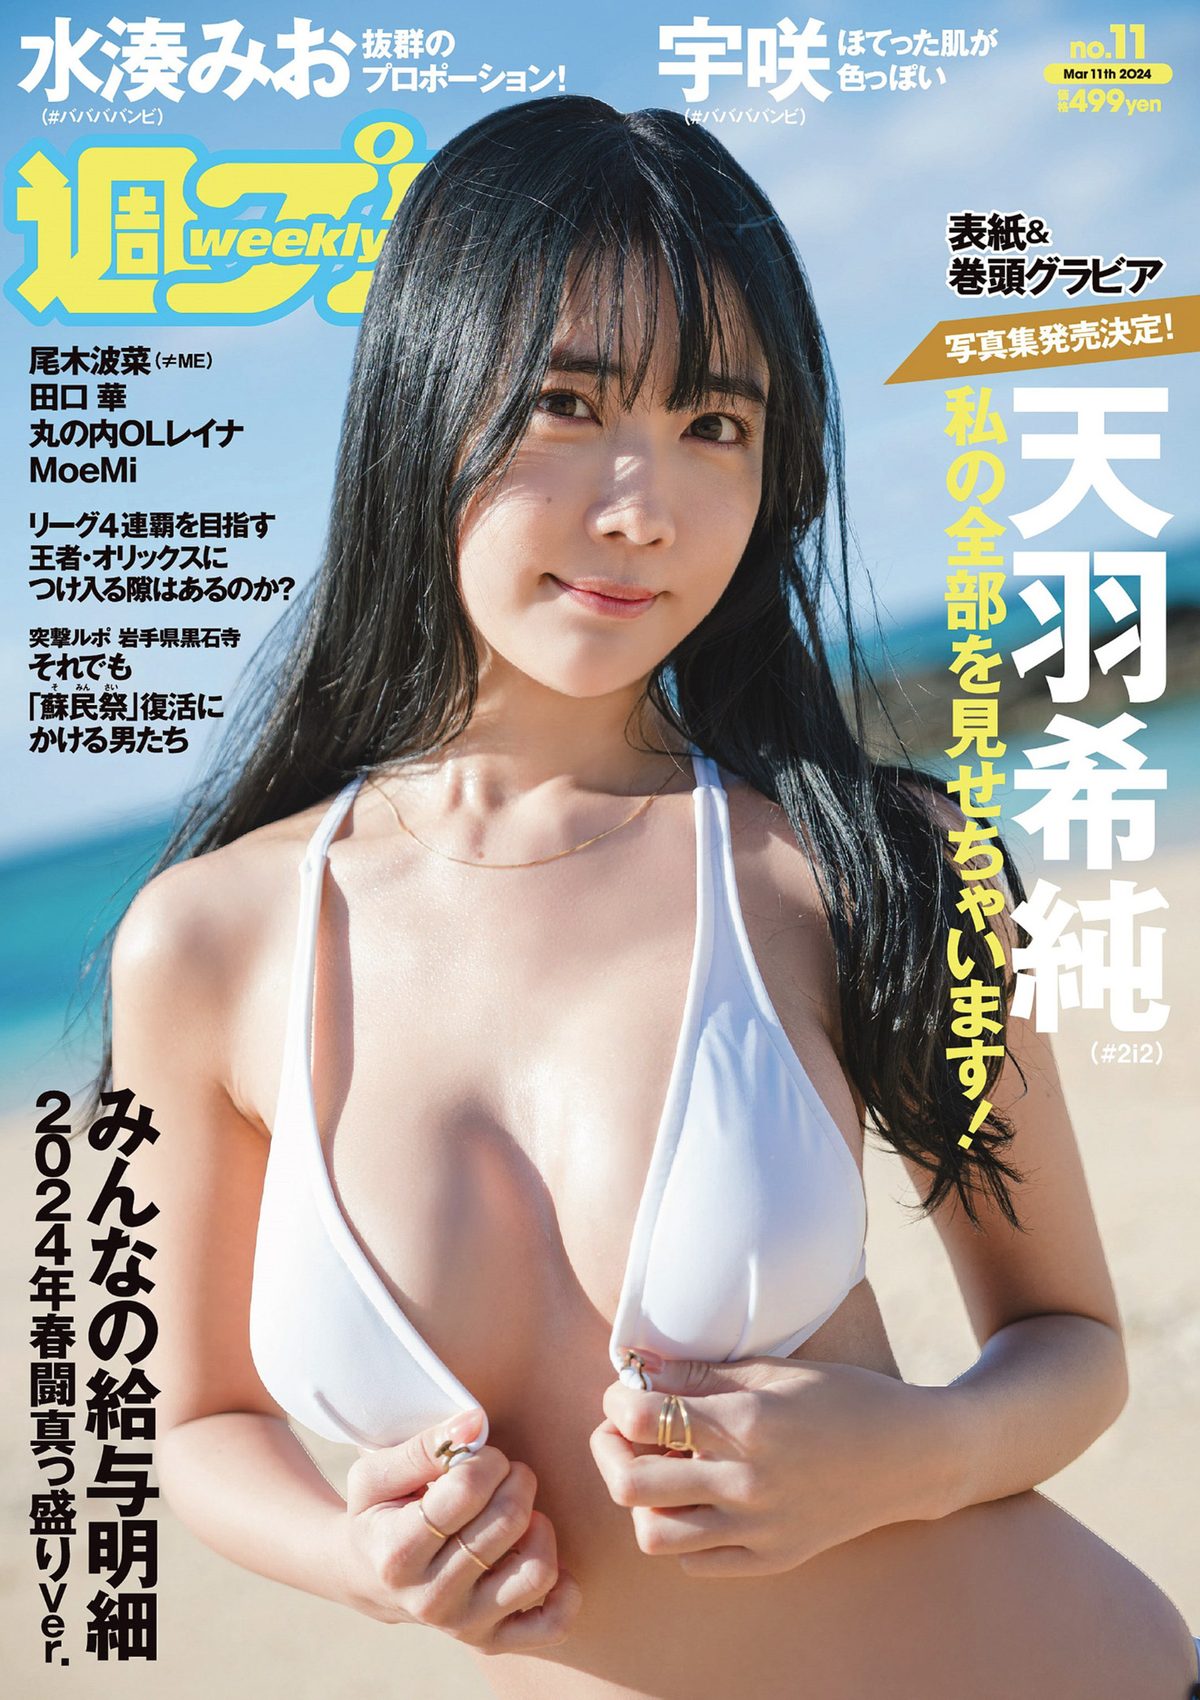 Weekly Playboy 2024 No 11 天羽希純 宇咲 水湊みお 尾木波菜 田口華 MoeMi 0001 1799283129.jpg